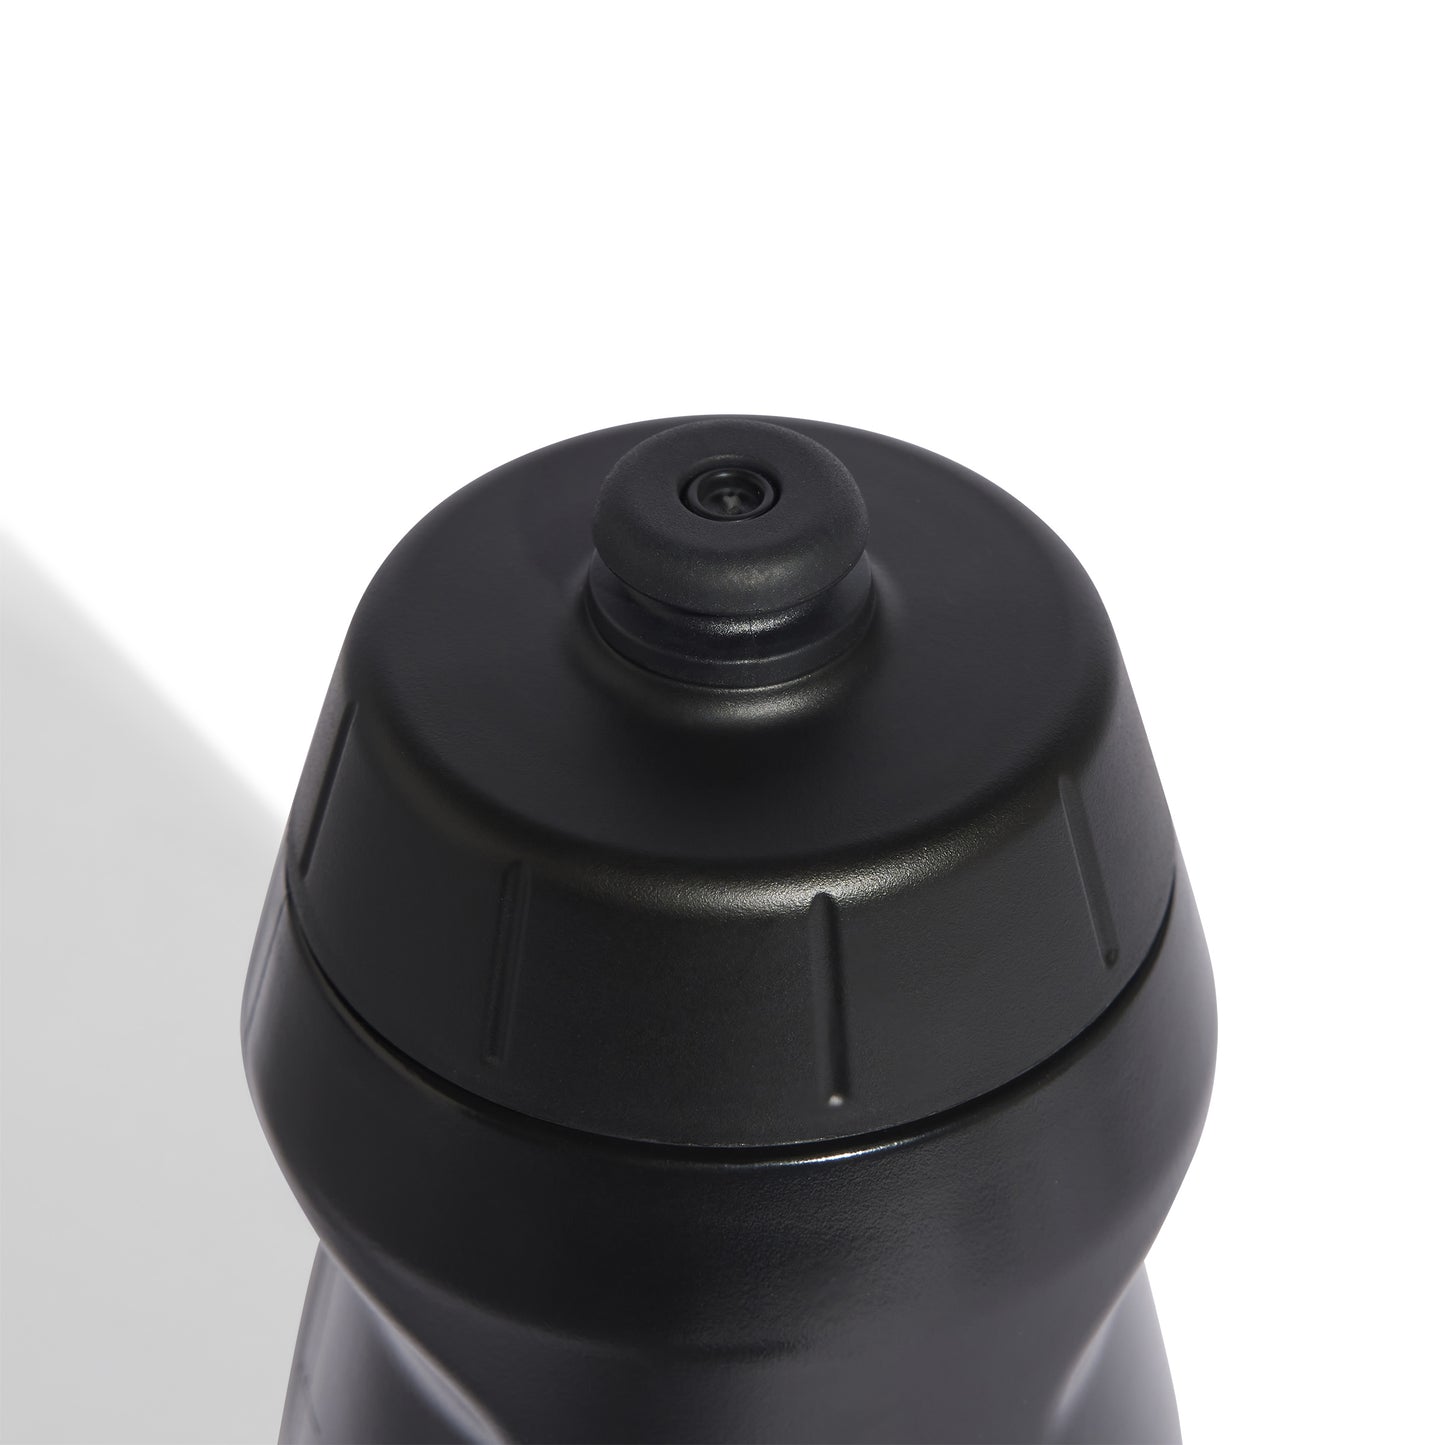 Adidas Tiro Water Bottle 0.5L